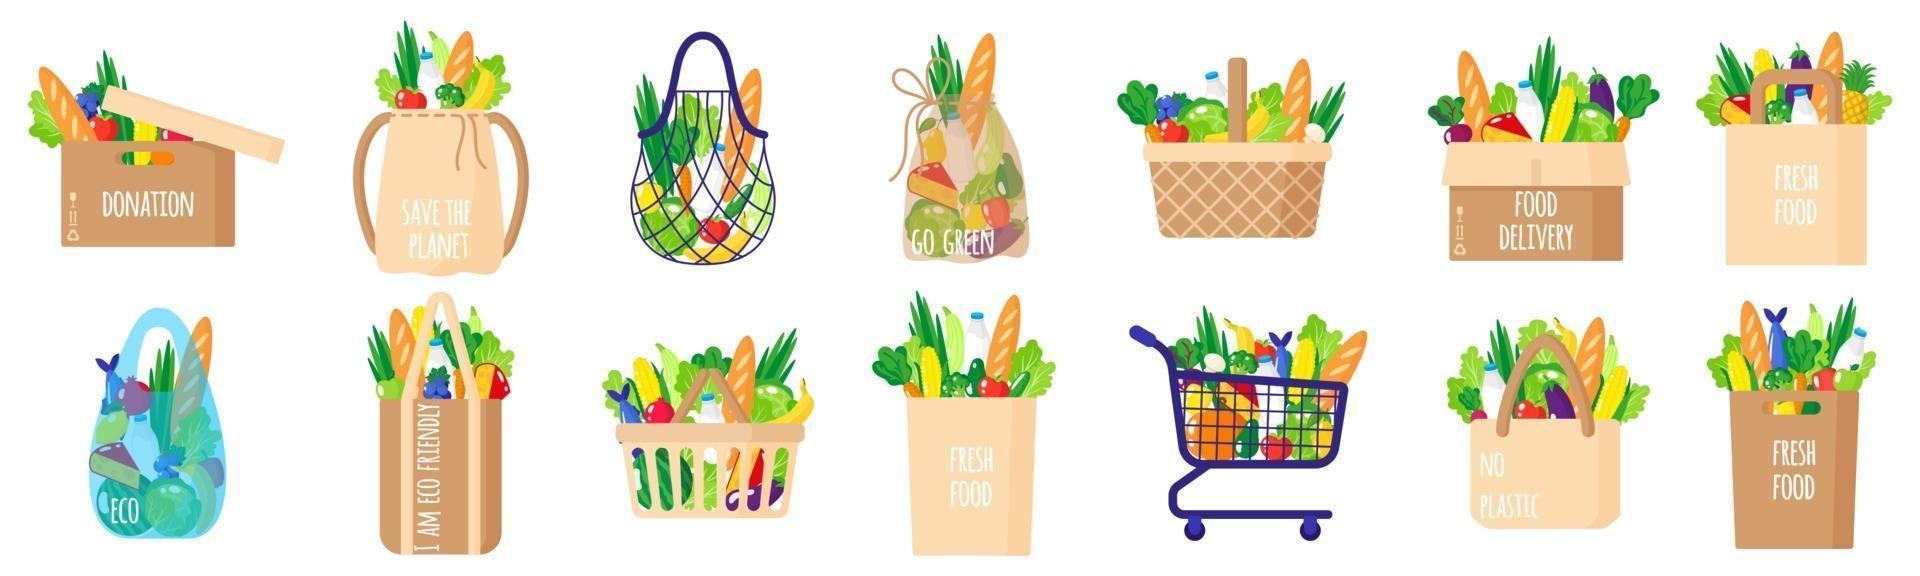 conjunto de desenhos animados de vetor de sacolas de papel, cestas, carrinho, caixa, sacola de tartaruga com alimentos saudáveis, isolado no fundo branco